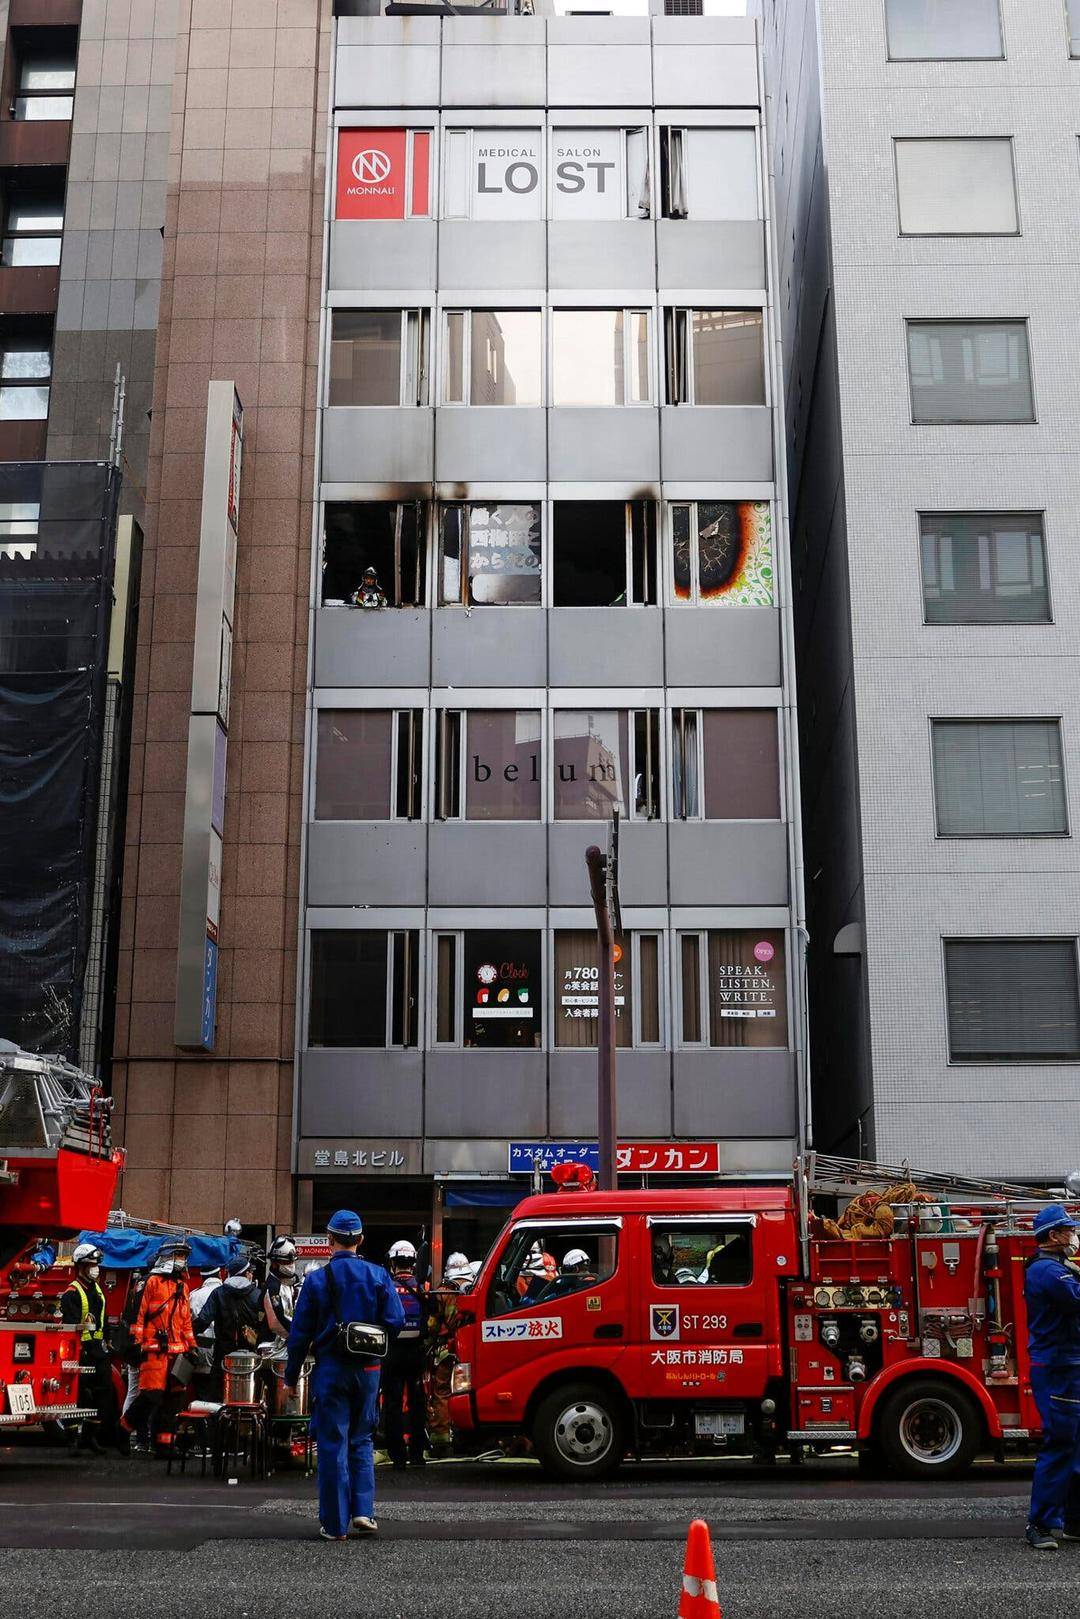 日本の大阪での2回の連続放火攻撃で、30分以内に少なくとも24人が死亡しました。容疑者は最初に住居を焼き払い、次に精神科の診療所を焼き払う可能性があります。